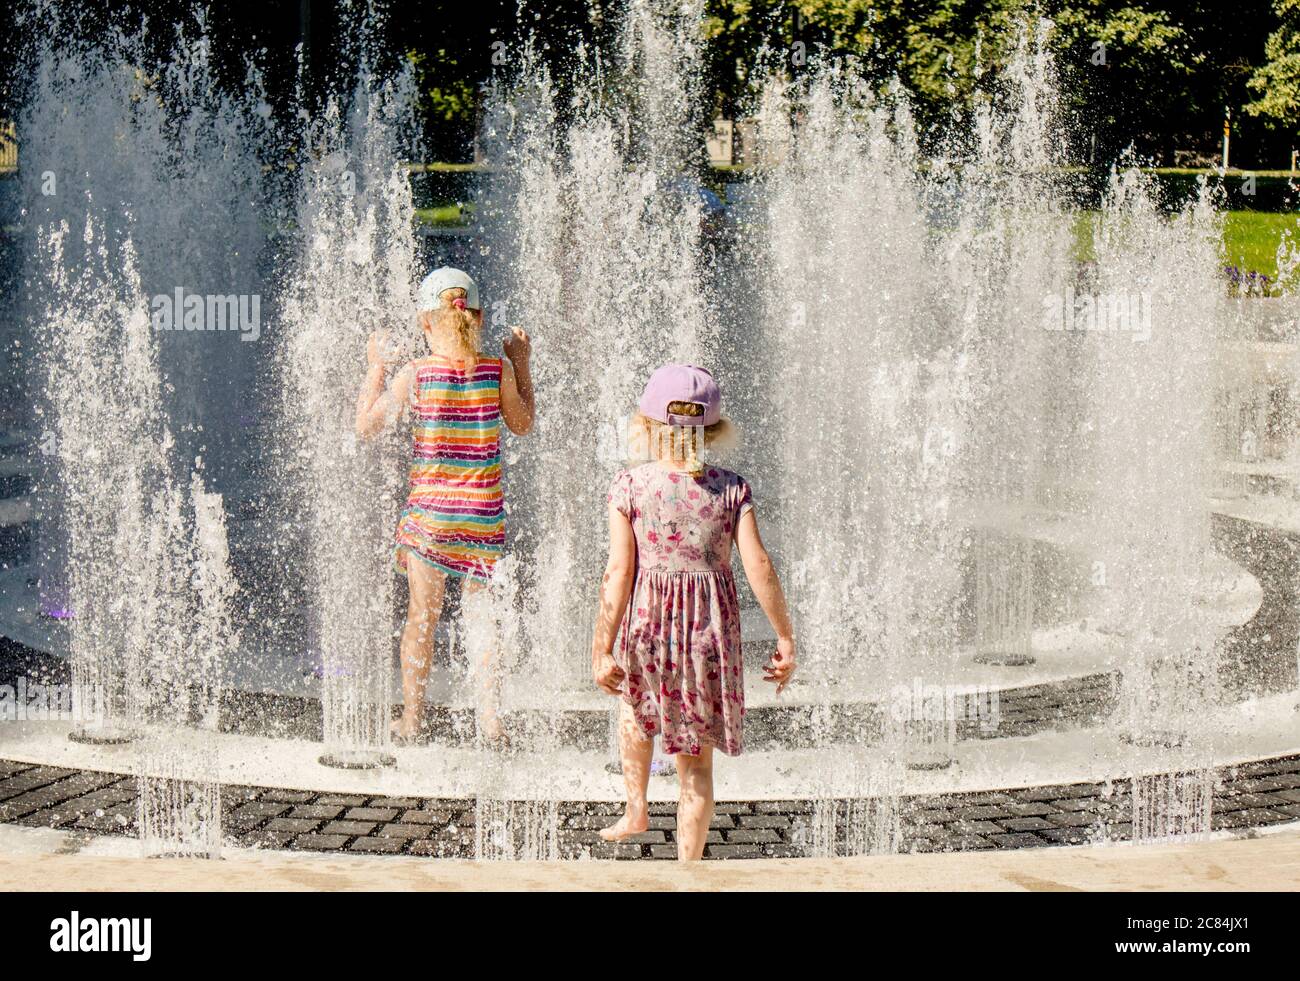 Les enfants jouent dans la fontaine d'eau dans le parc public, s'amusent par une chaude journée d'été ensoleillée. Banque D'Images